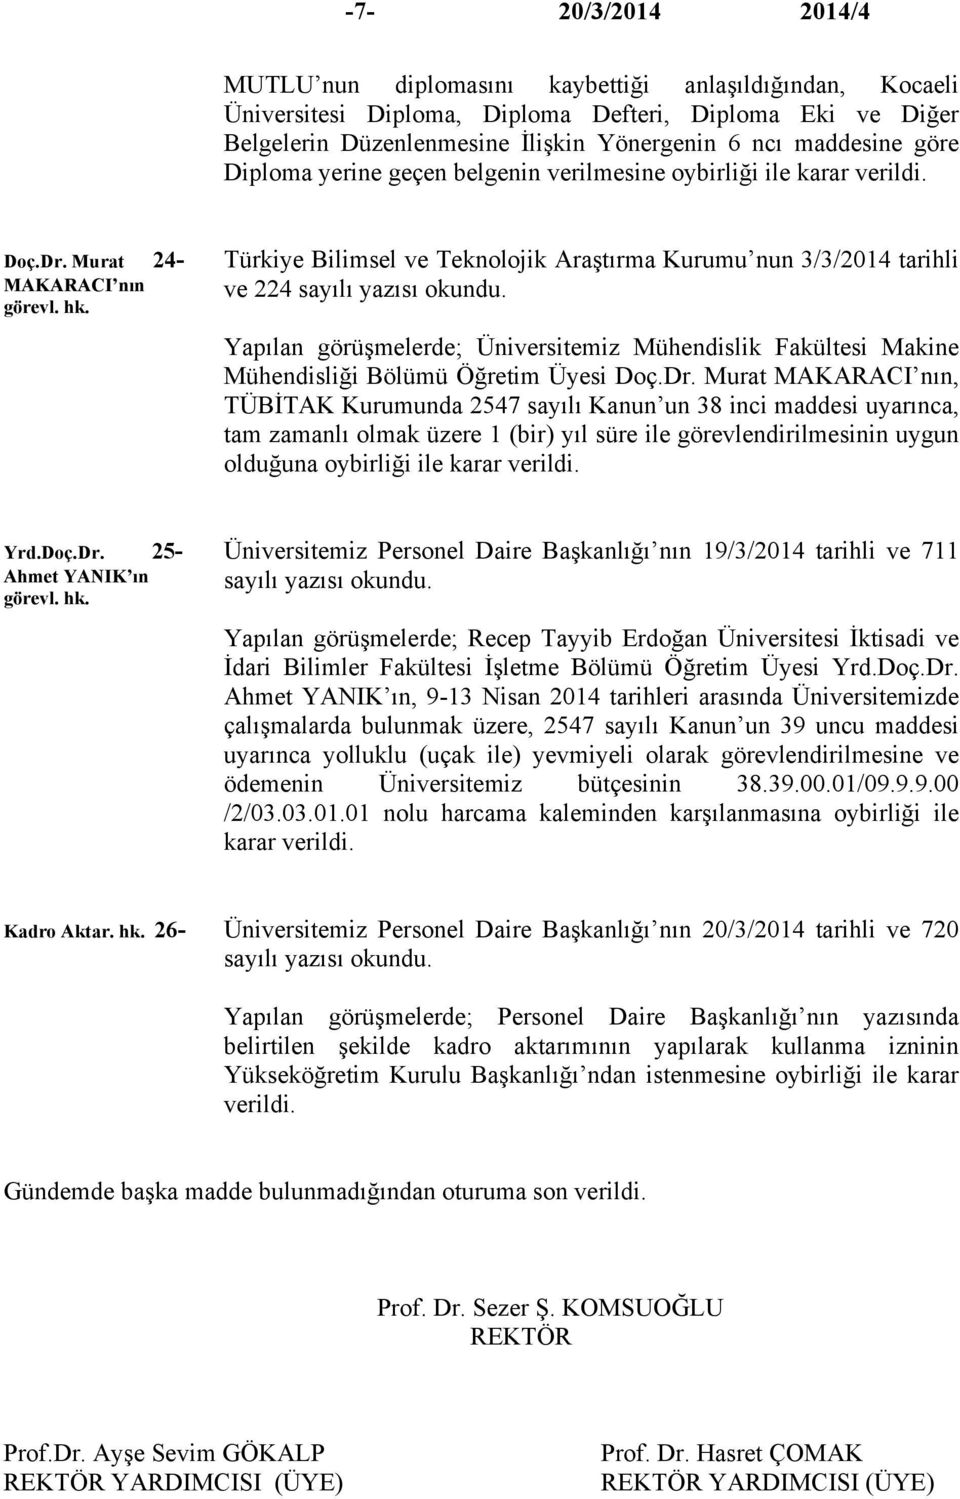 Murat 24- MAKARACI nın Türkiye Bilimsel ve Teknolojik Araştırma Kurumu nun 3/3/2014 tarihli ve 224 sayılı yazısı okundu.